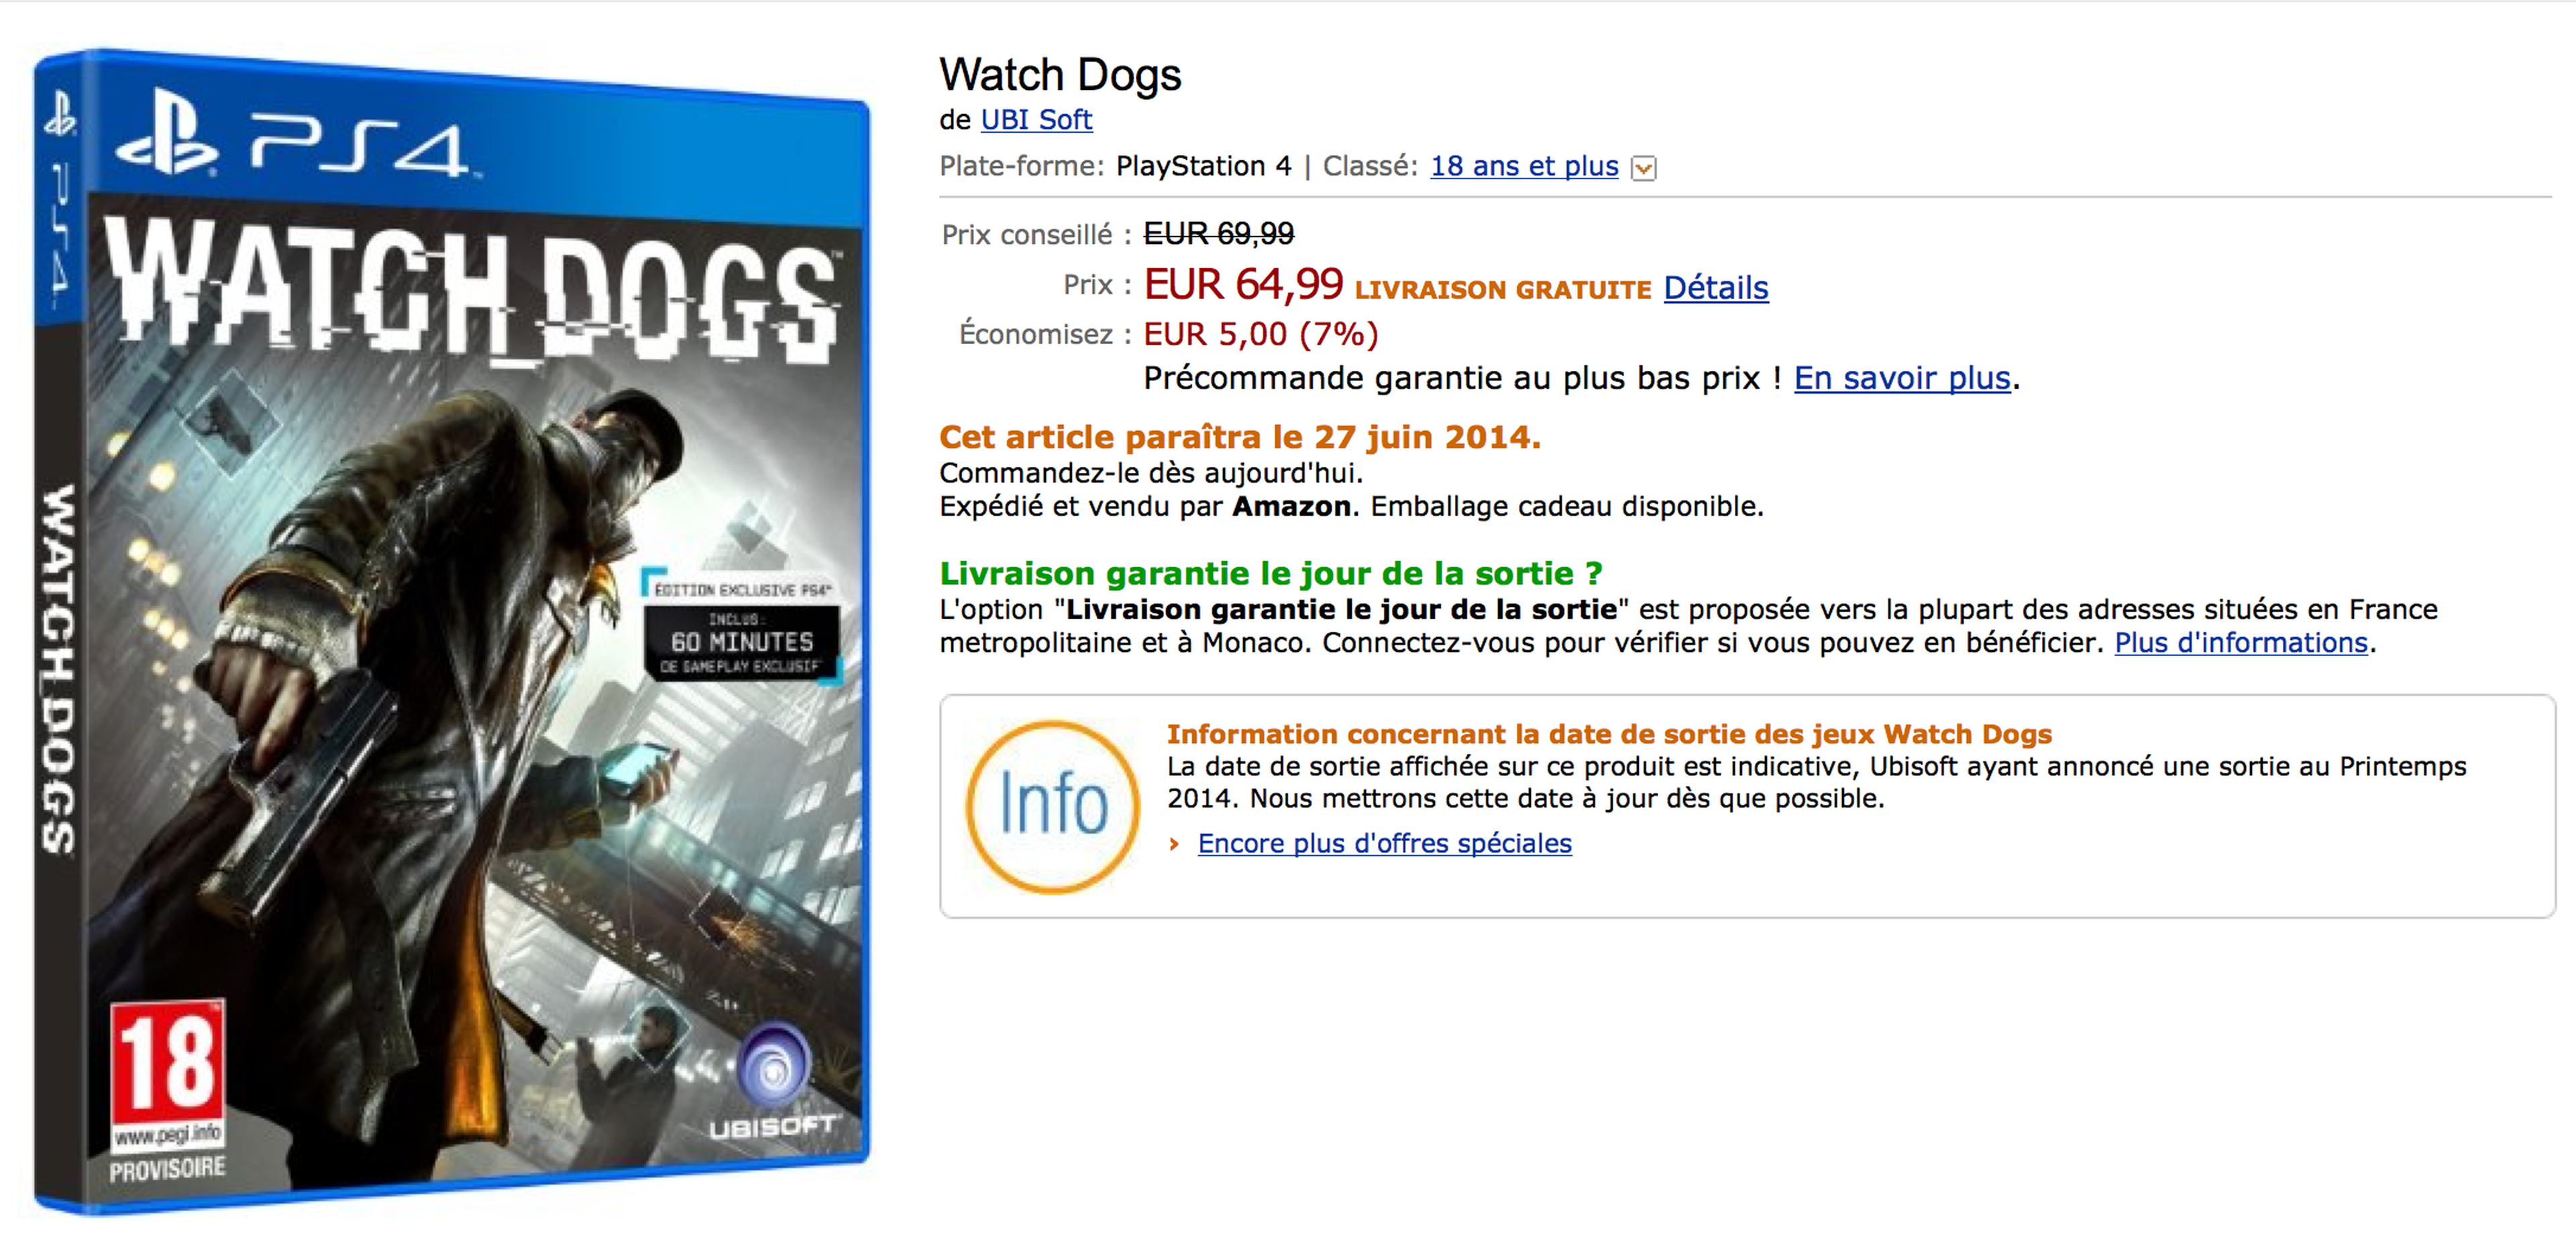 Watch Dogs saldría el 27 de junio, según Amazon Francia